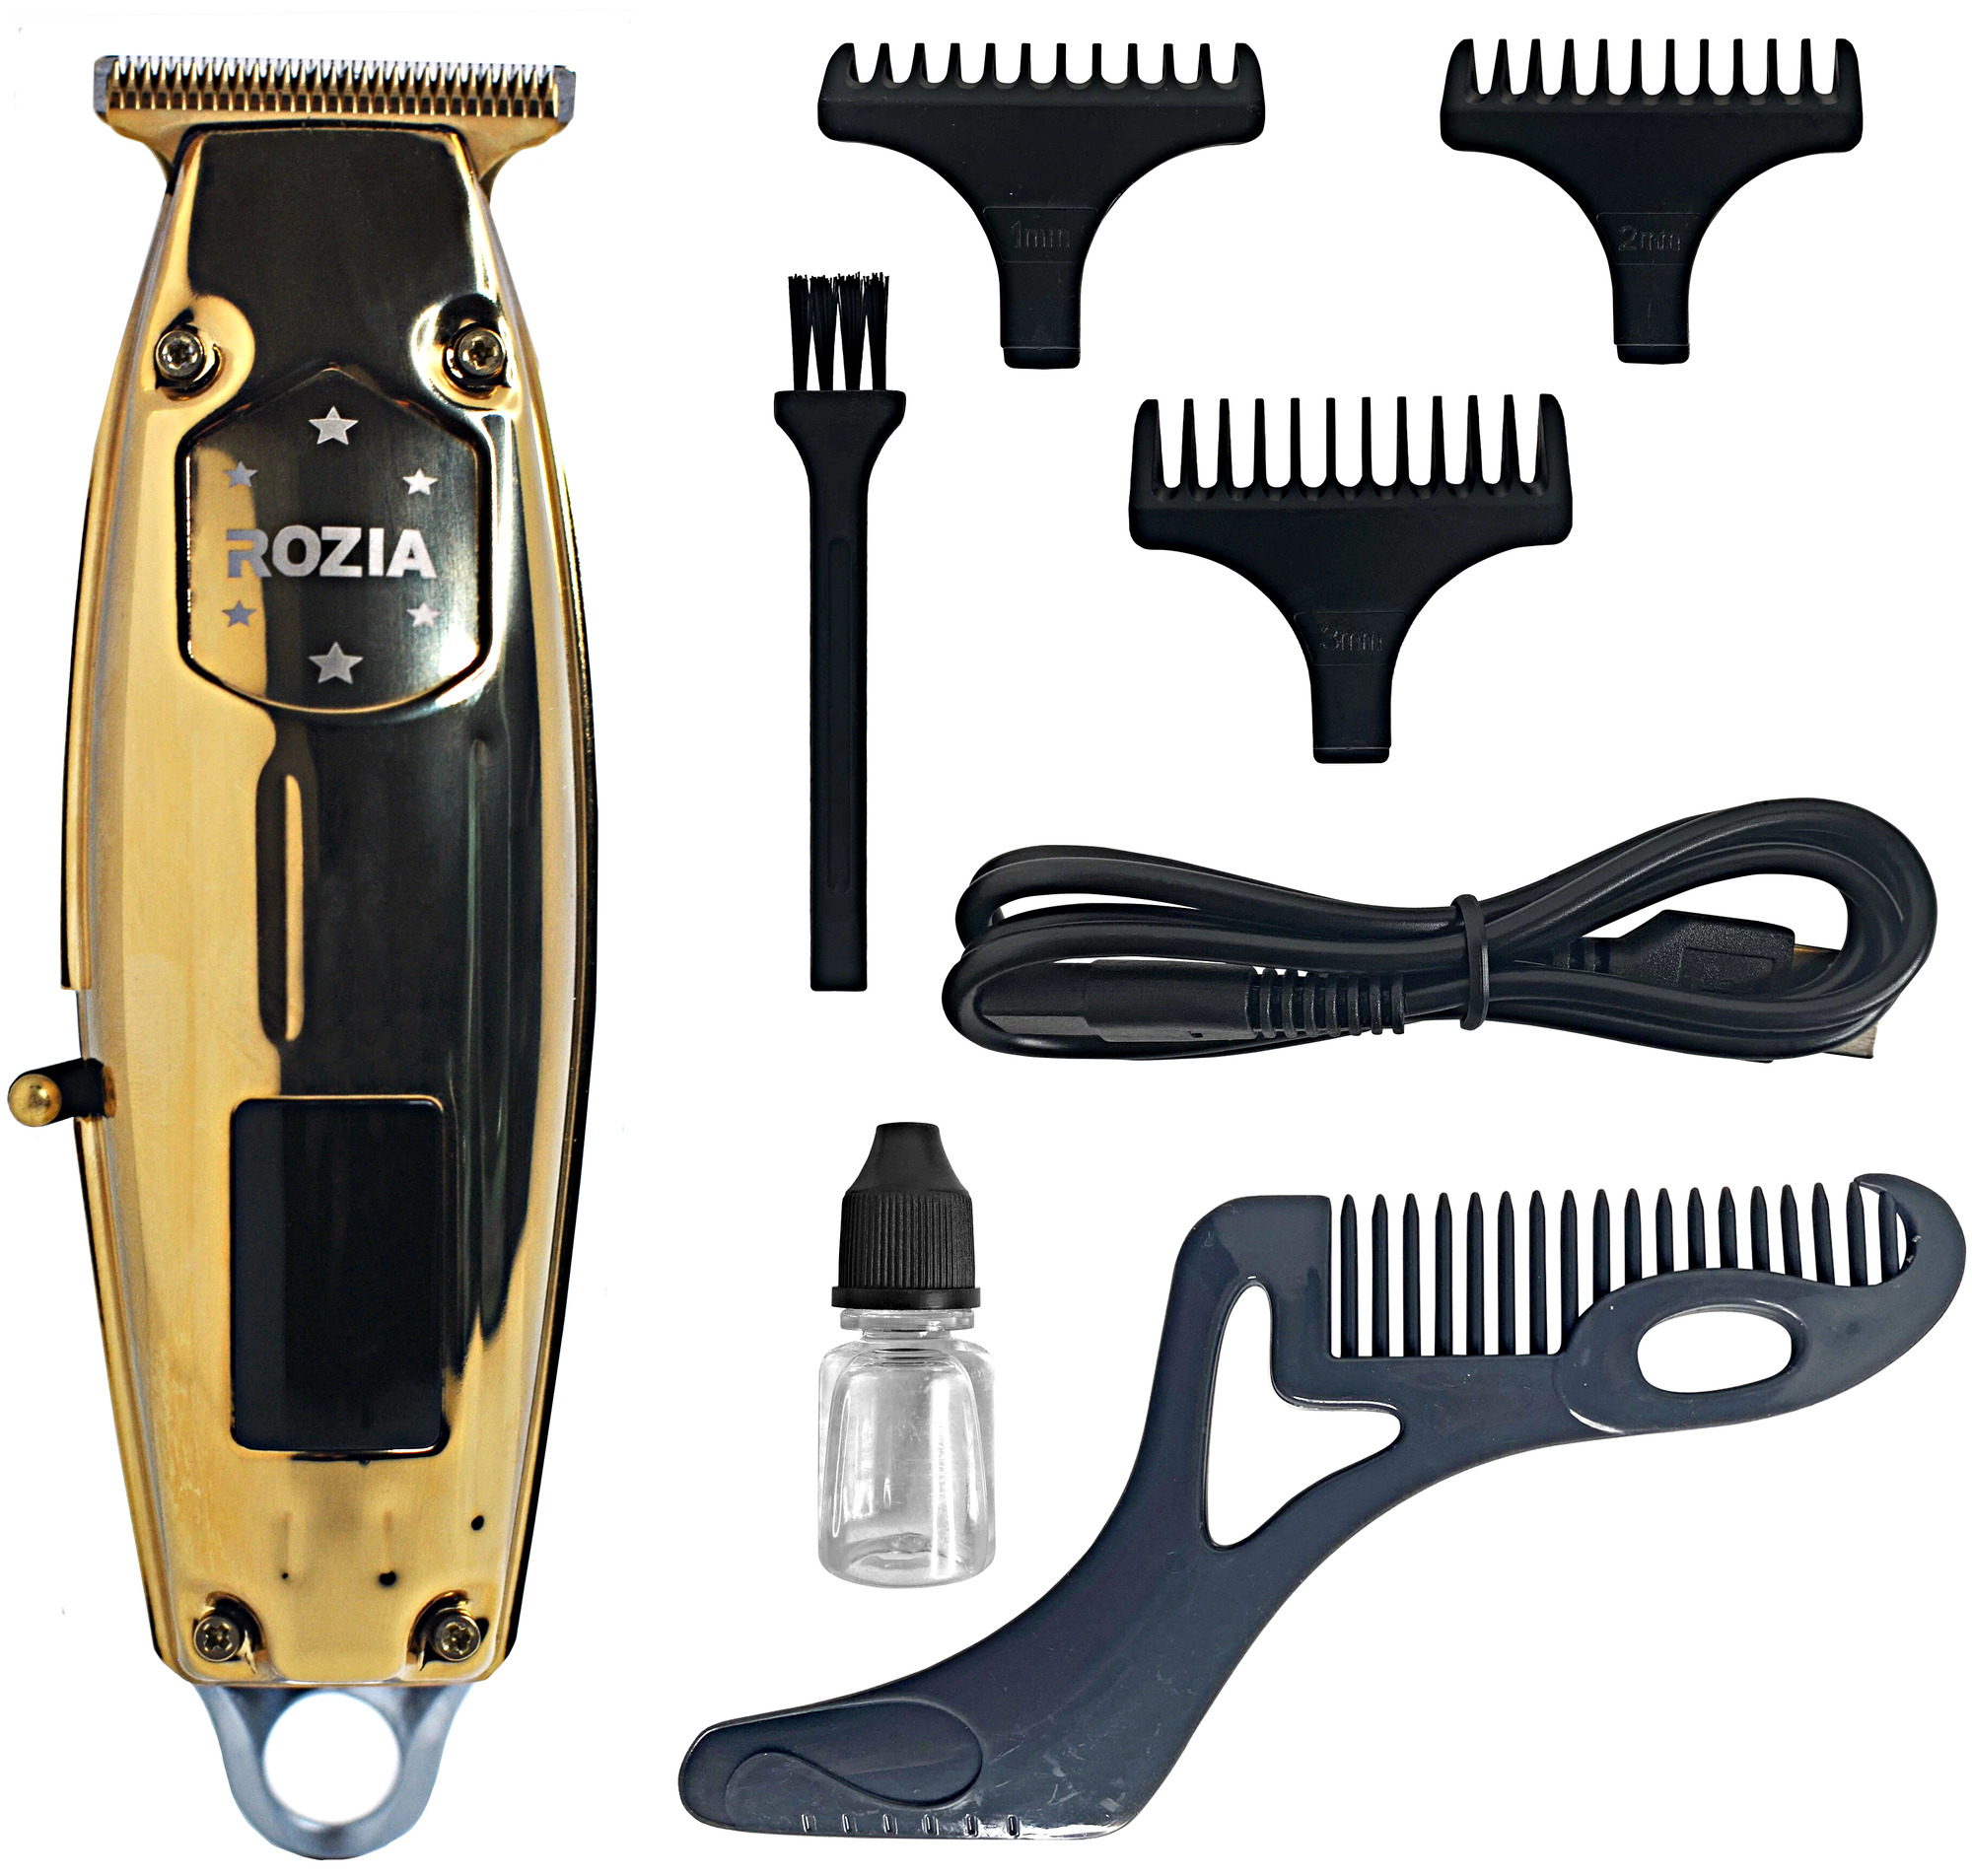 Машинка для стрижки волос HQ-258, Профессиональный триммер для стрижки волос, для бороды, усов, Золотистый